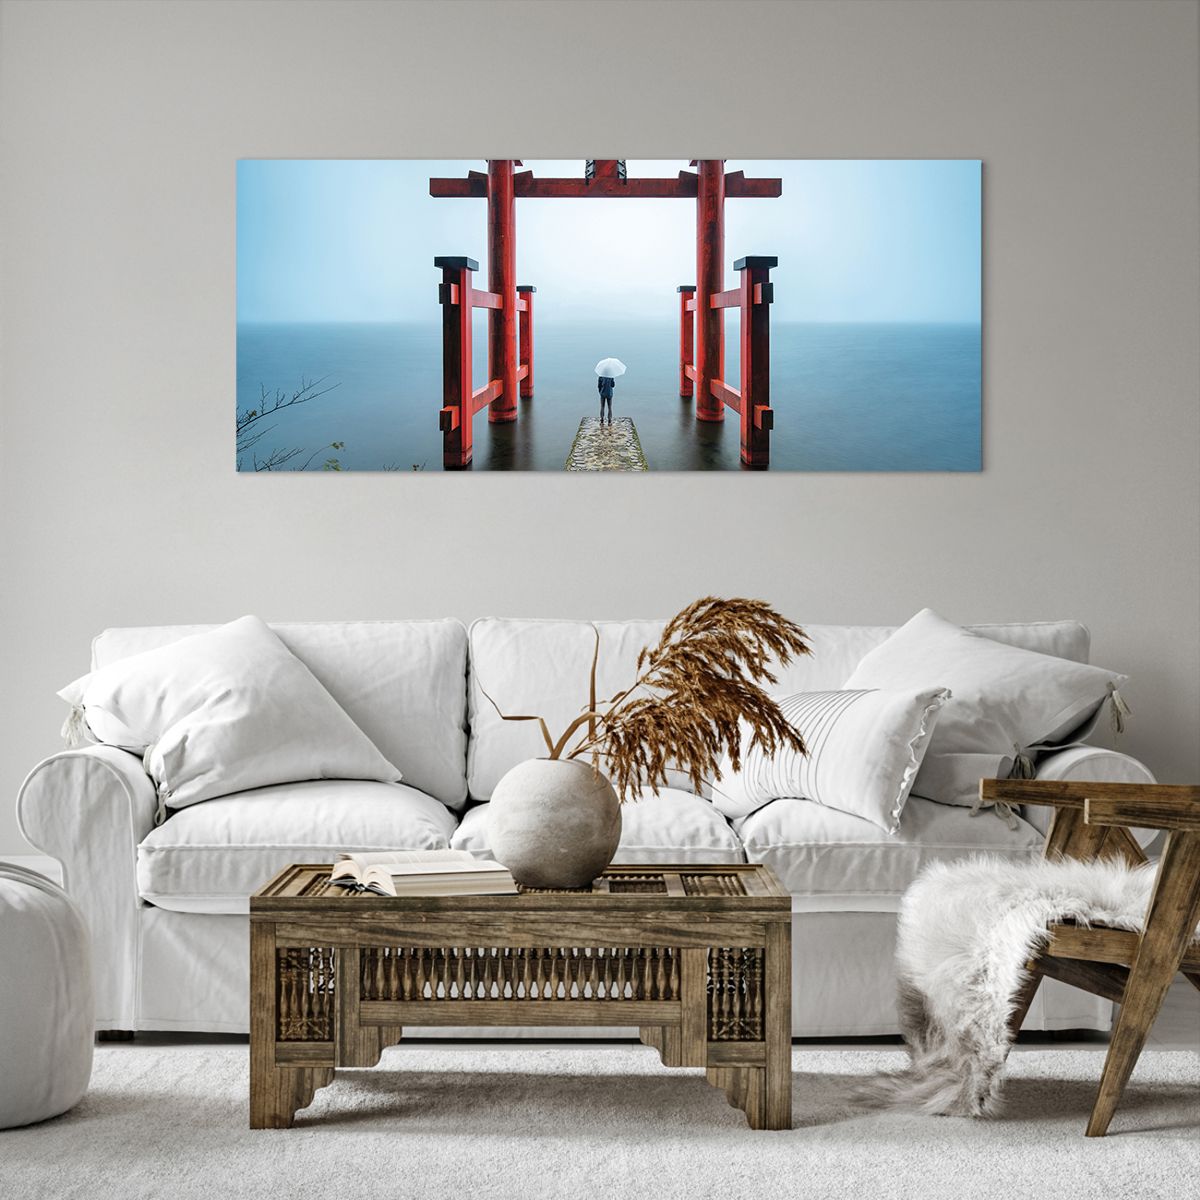 Obrazy na płótnie Azja, Obrazy na płótnie Świątynia Hakone, Obrazy na płótnie Japonia, Obrazy na płótnie Religia, Obrazy na płótnie Kultura